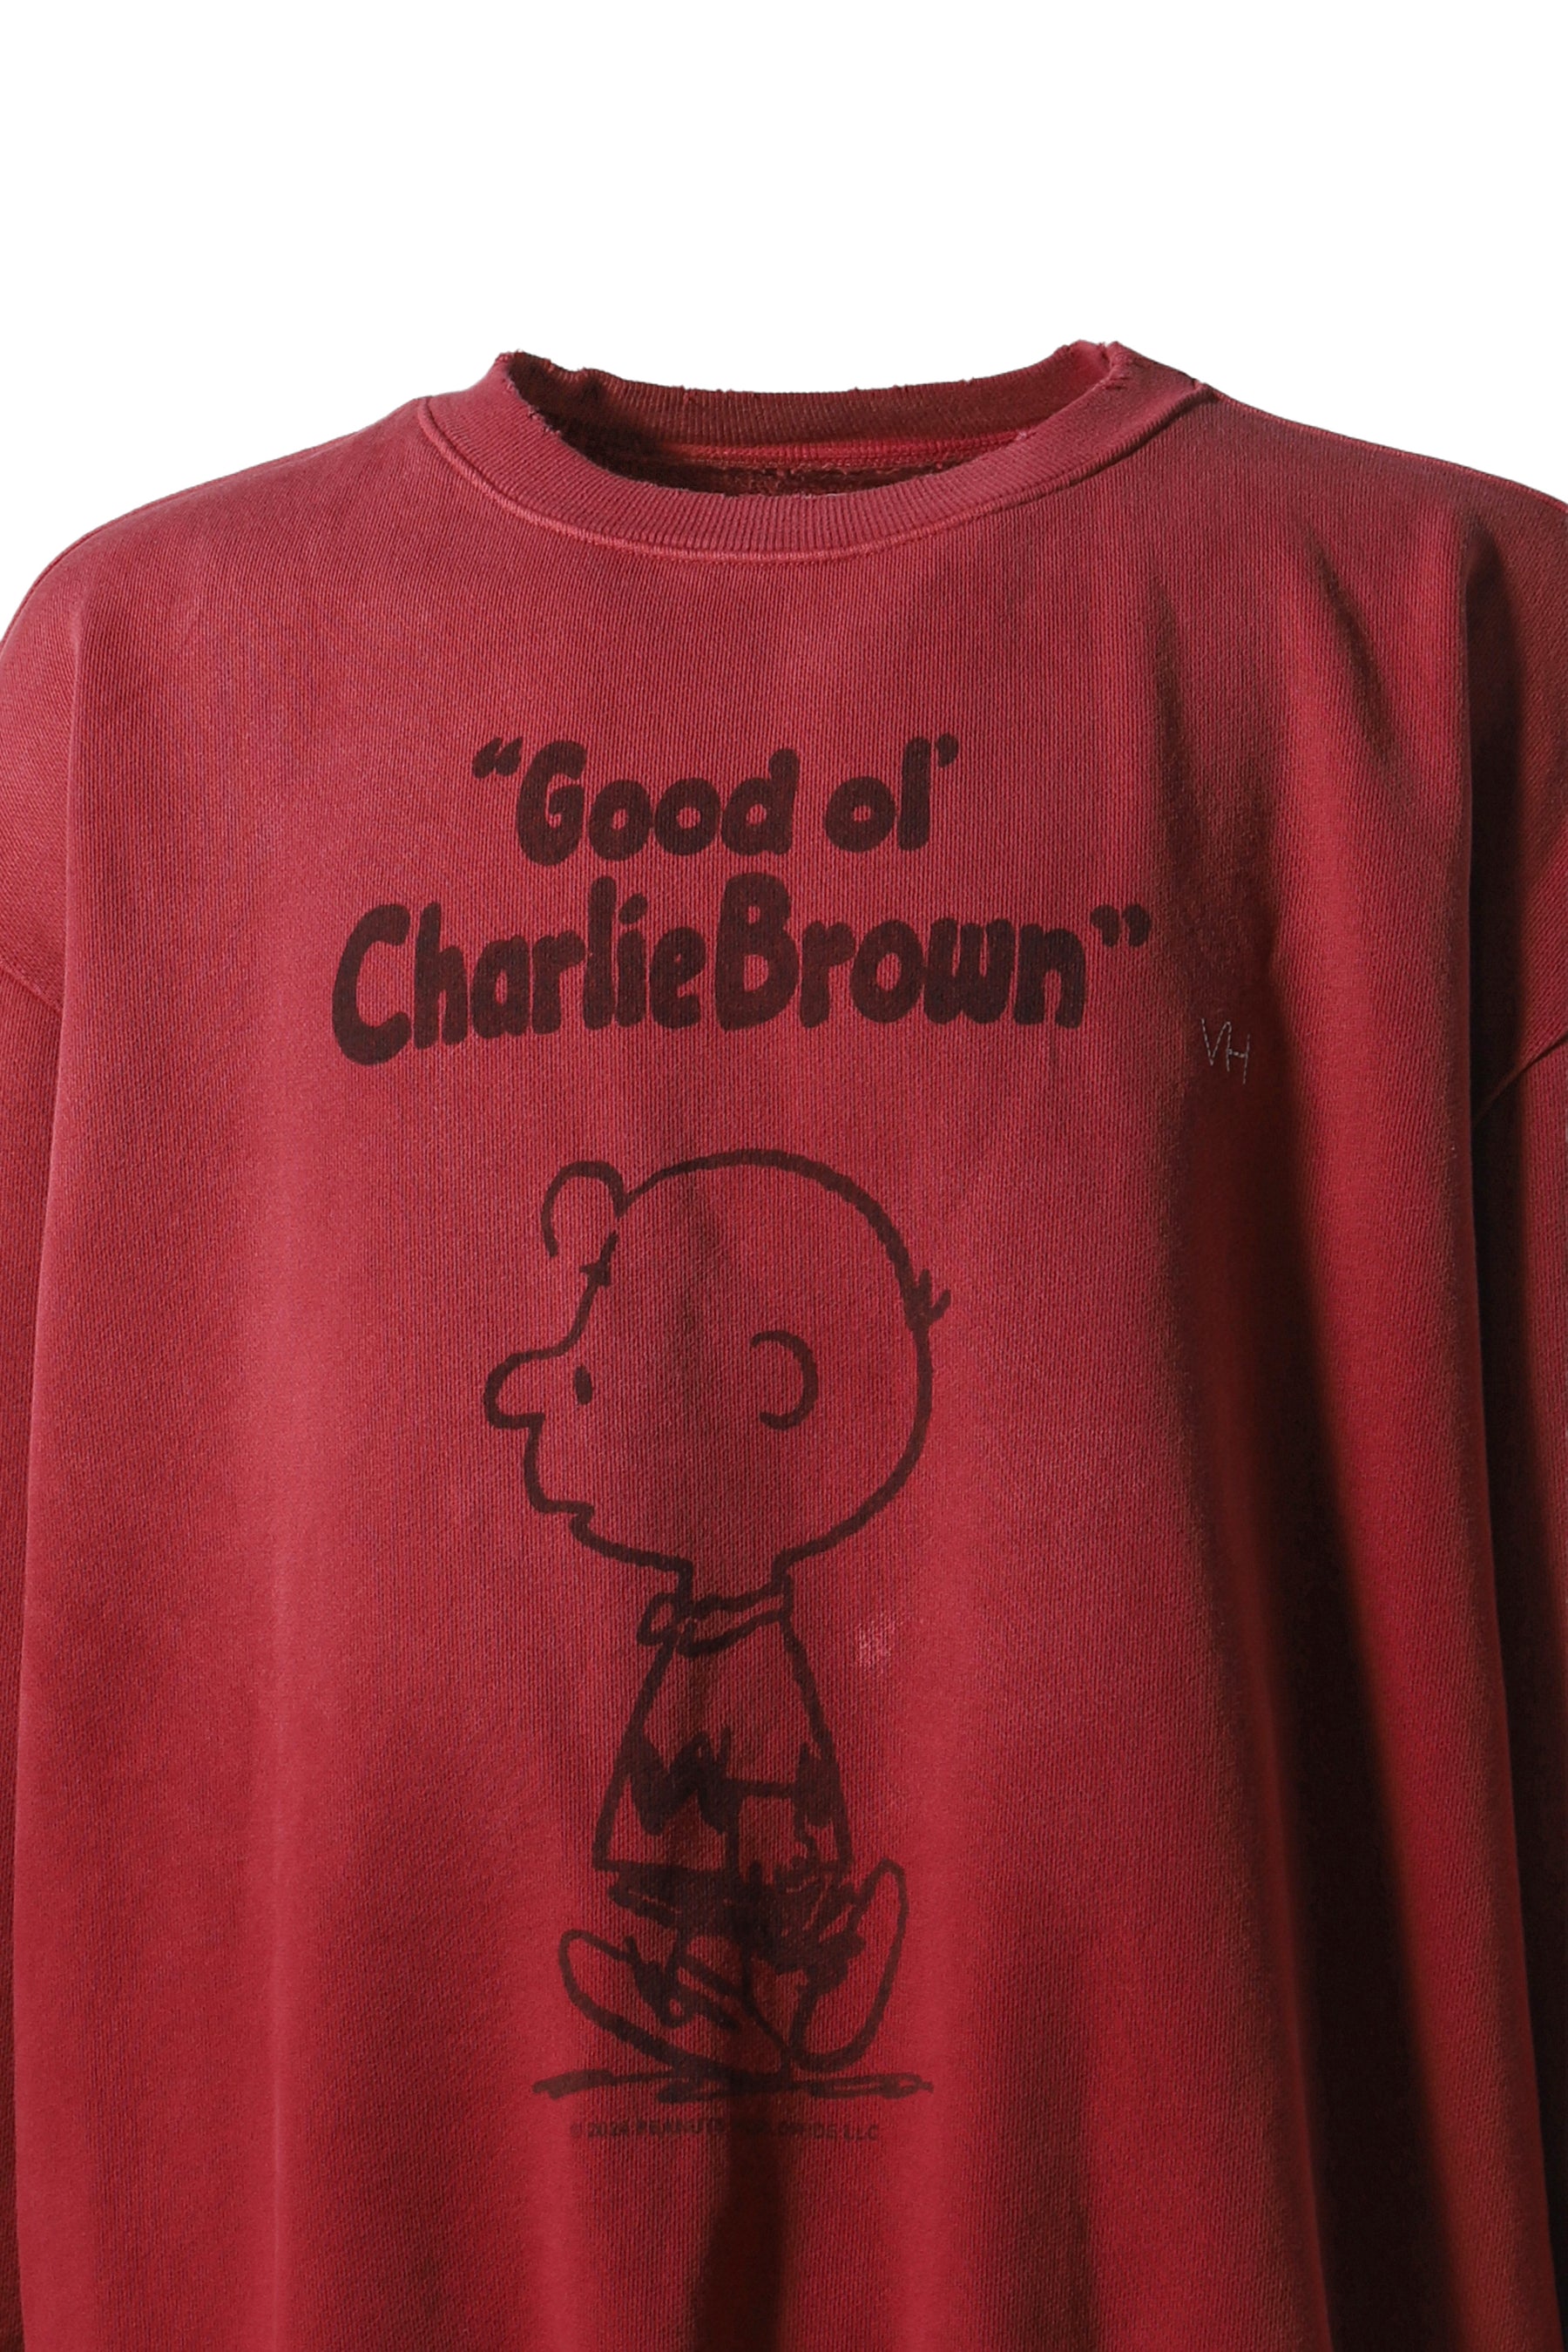 GOOD OL CHARLIE BROWN CREWNECK / RED